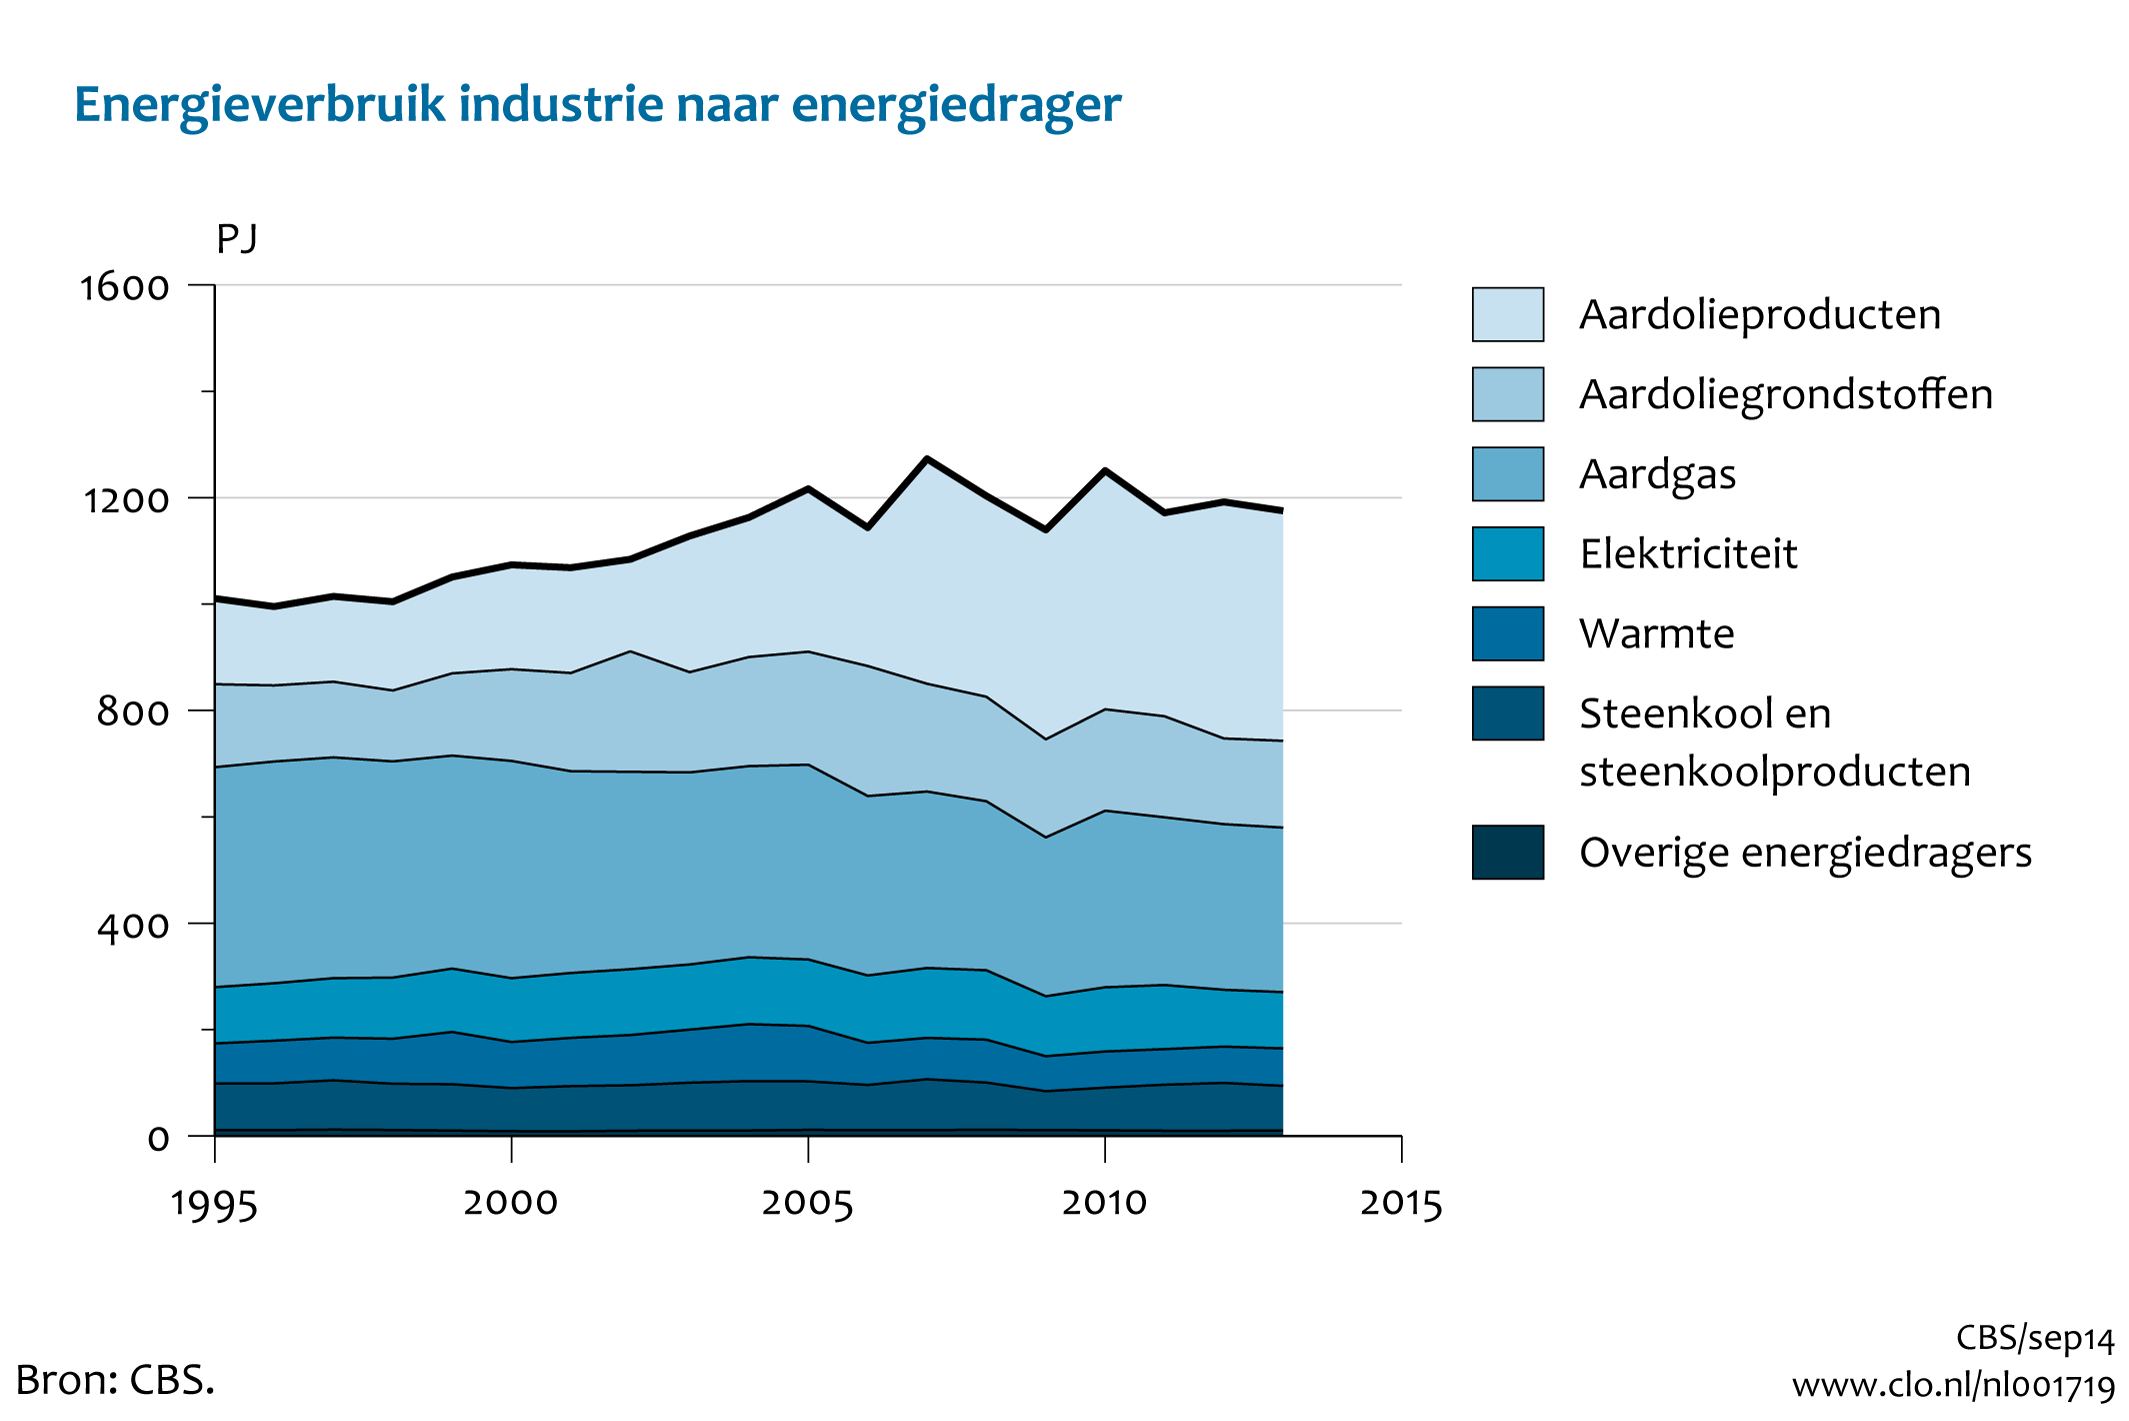 Figuur Energieverbruik industrie naar energiedrager 1995-2013. In de rest van de tekst wordt deze figuur uitgebreider uitgelegd.